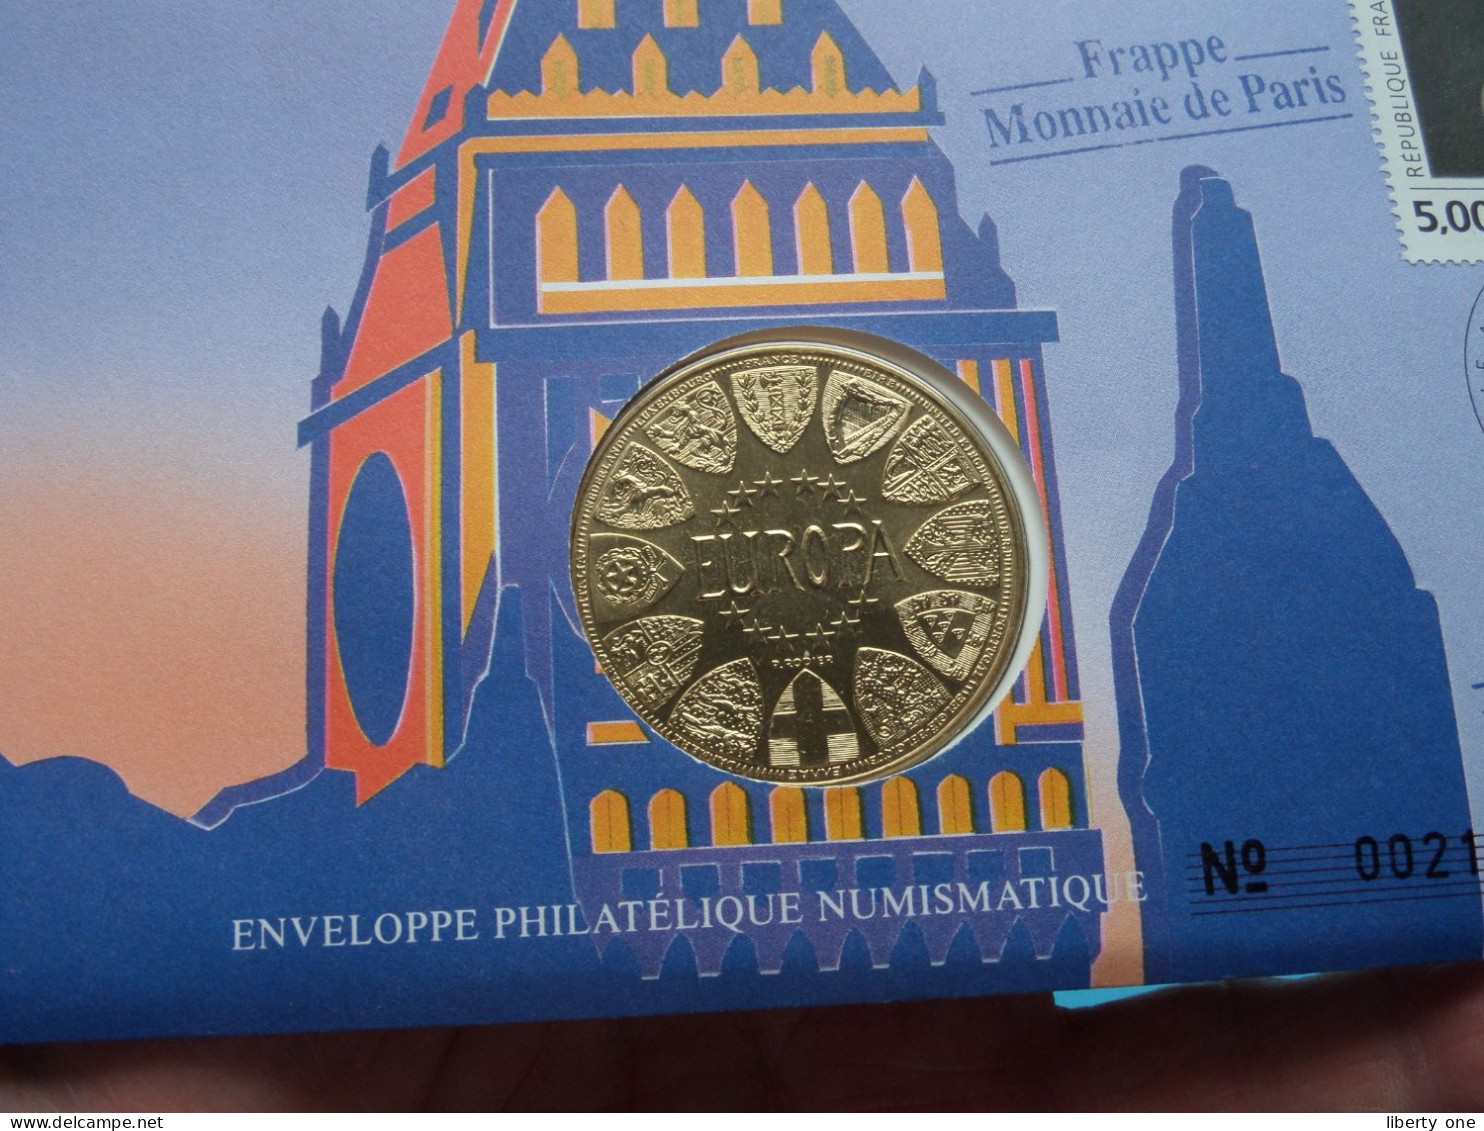 EUROPA - GRANDE BRETAGNE ( Voir Scans ) Enveloppe Numismatique Monnaie De Paris N° 00219 > 1990 > Numislettre ! - Pièces écrasées (Elongated Coins)